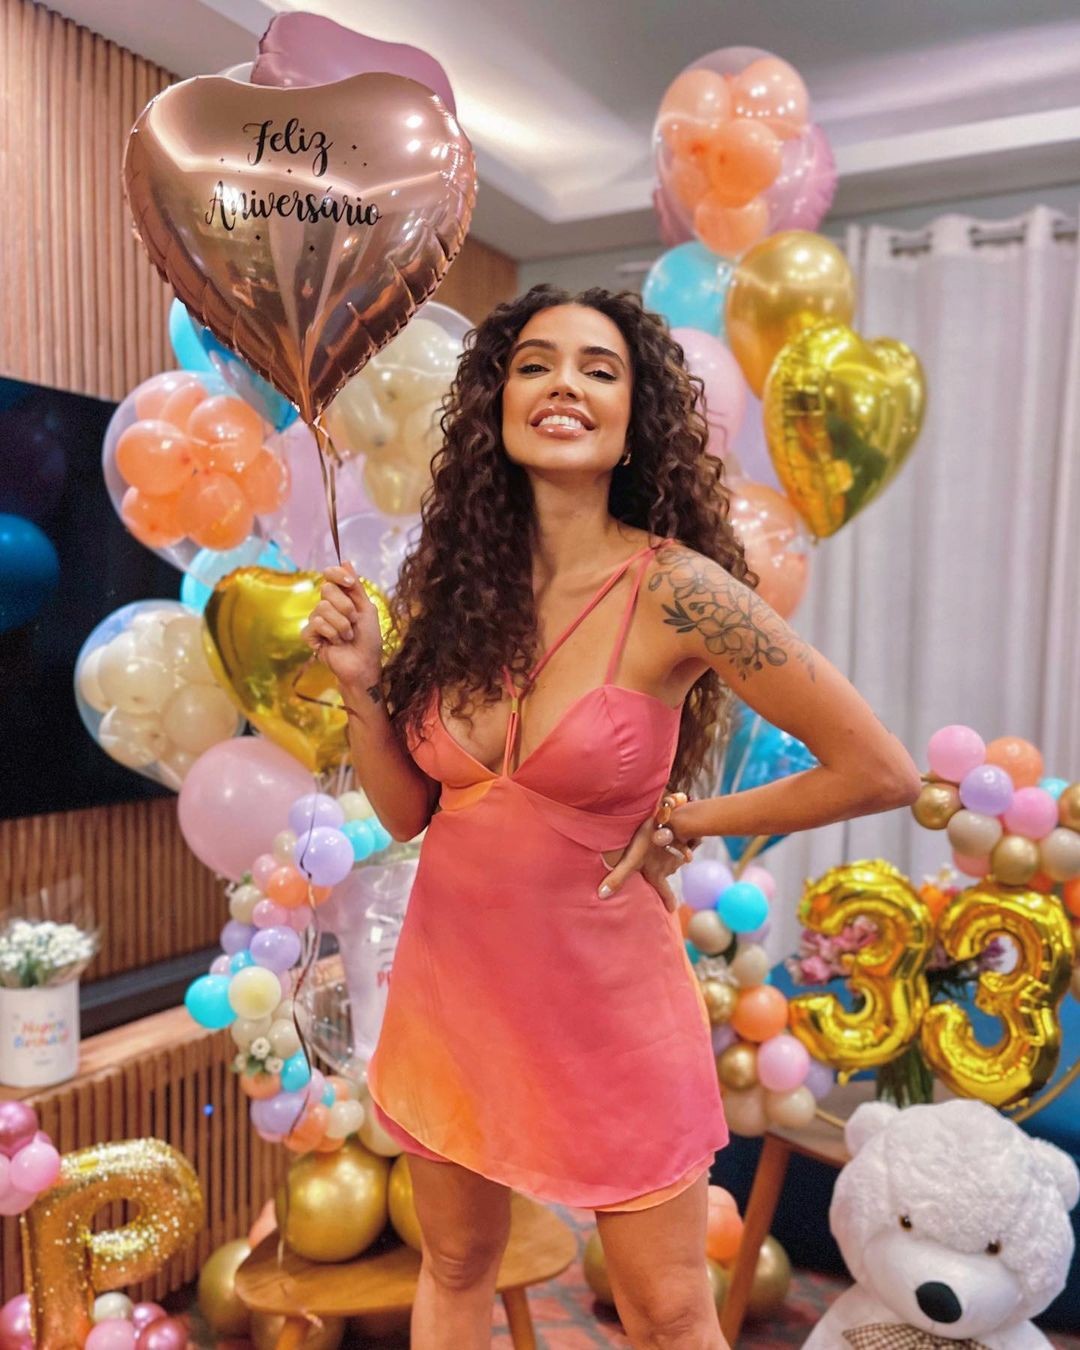 Paula Amorim celebra aniversário e faz balanço da vida (Foto: Reprodução/ Instagram)